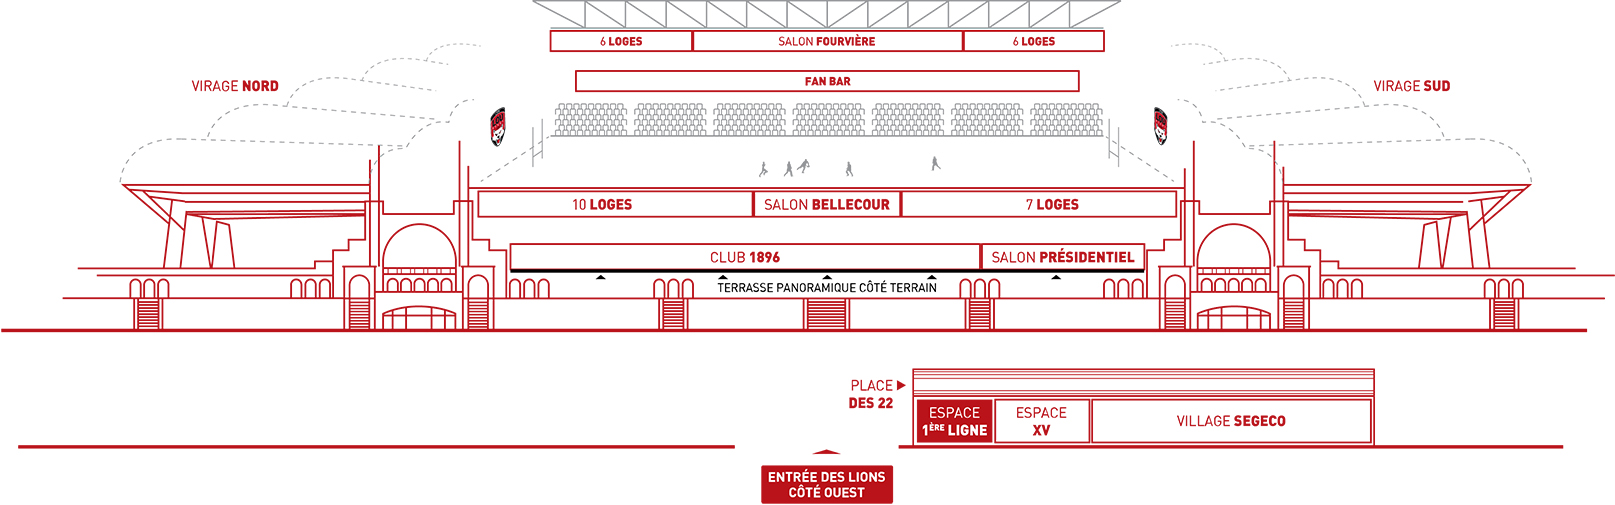 Espace 1er ligne Matmut Stadium Lyon Gerland plan schématique 